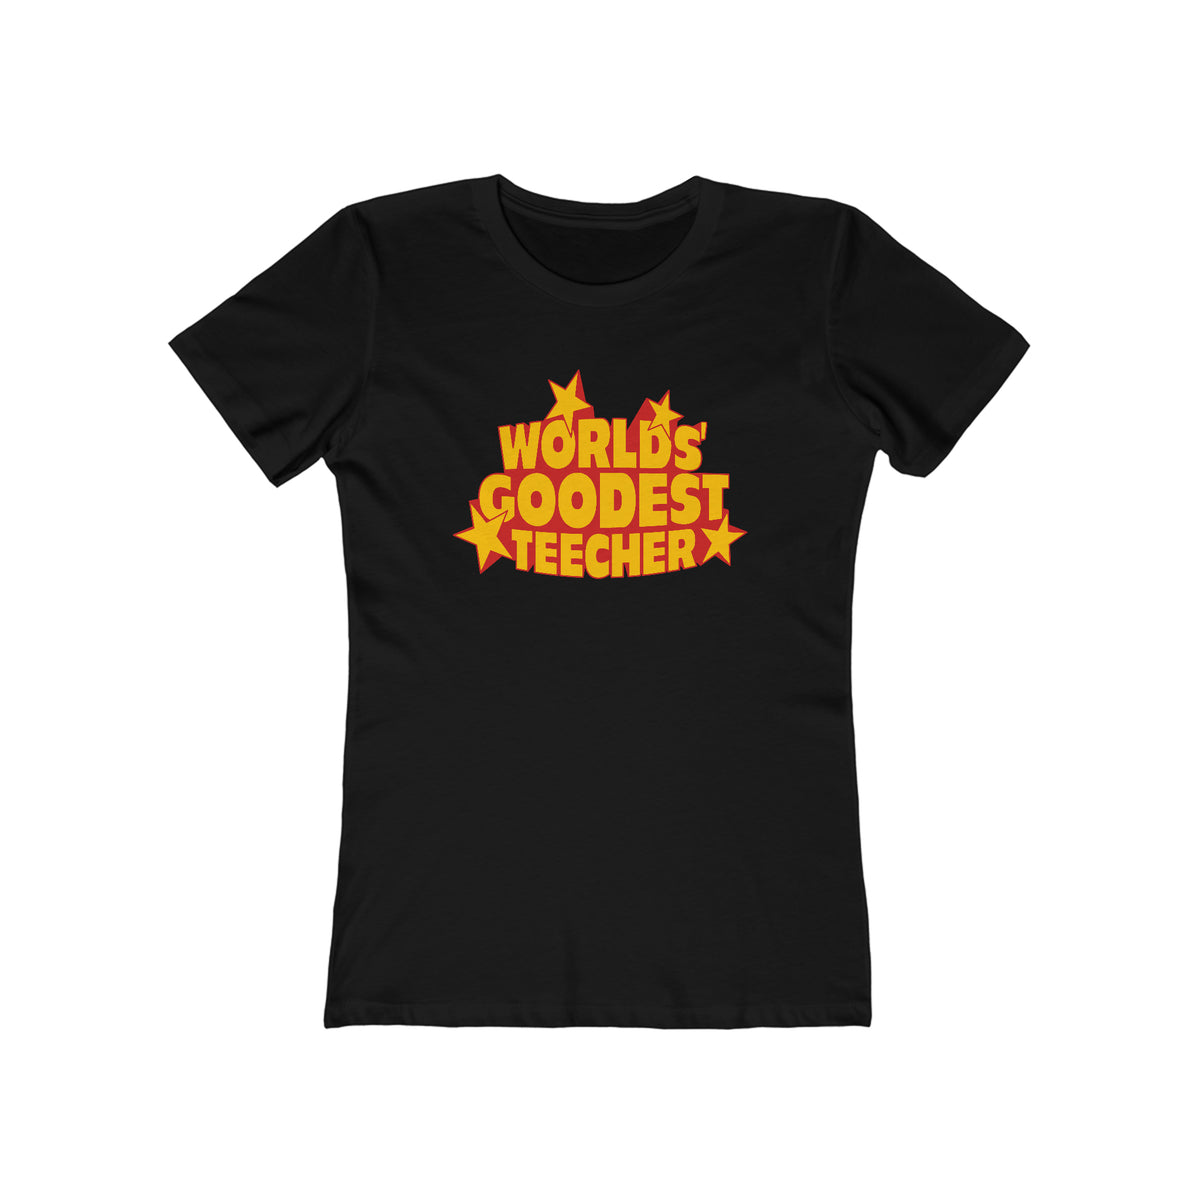 Worlds' Goodest Teecher  - Women’s T-Shirt